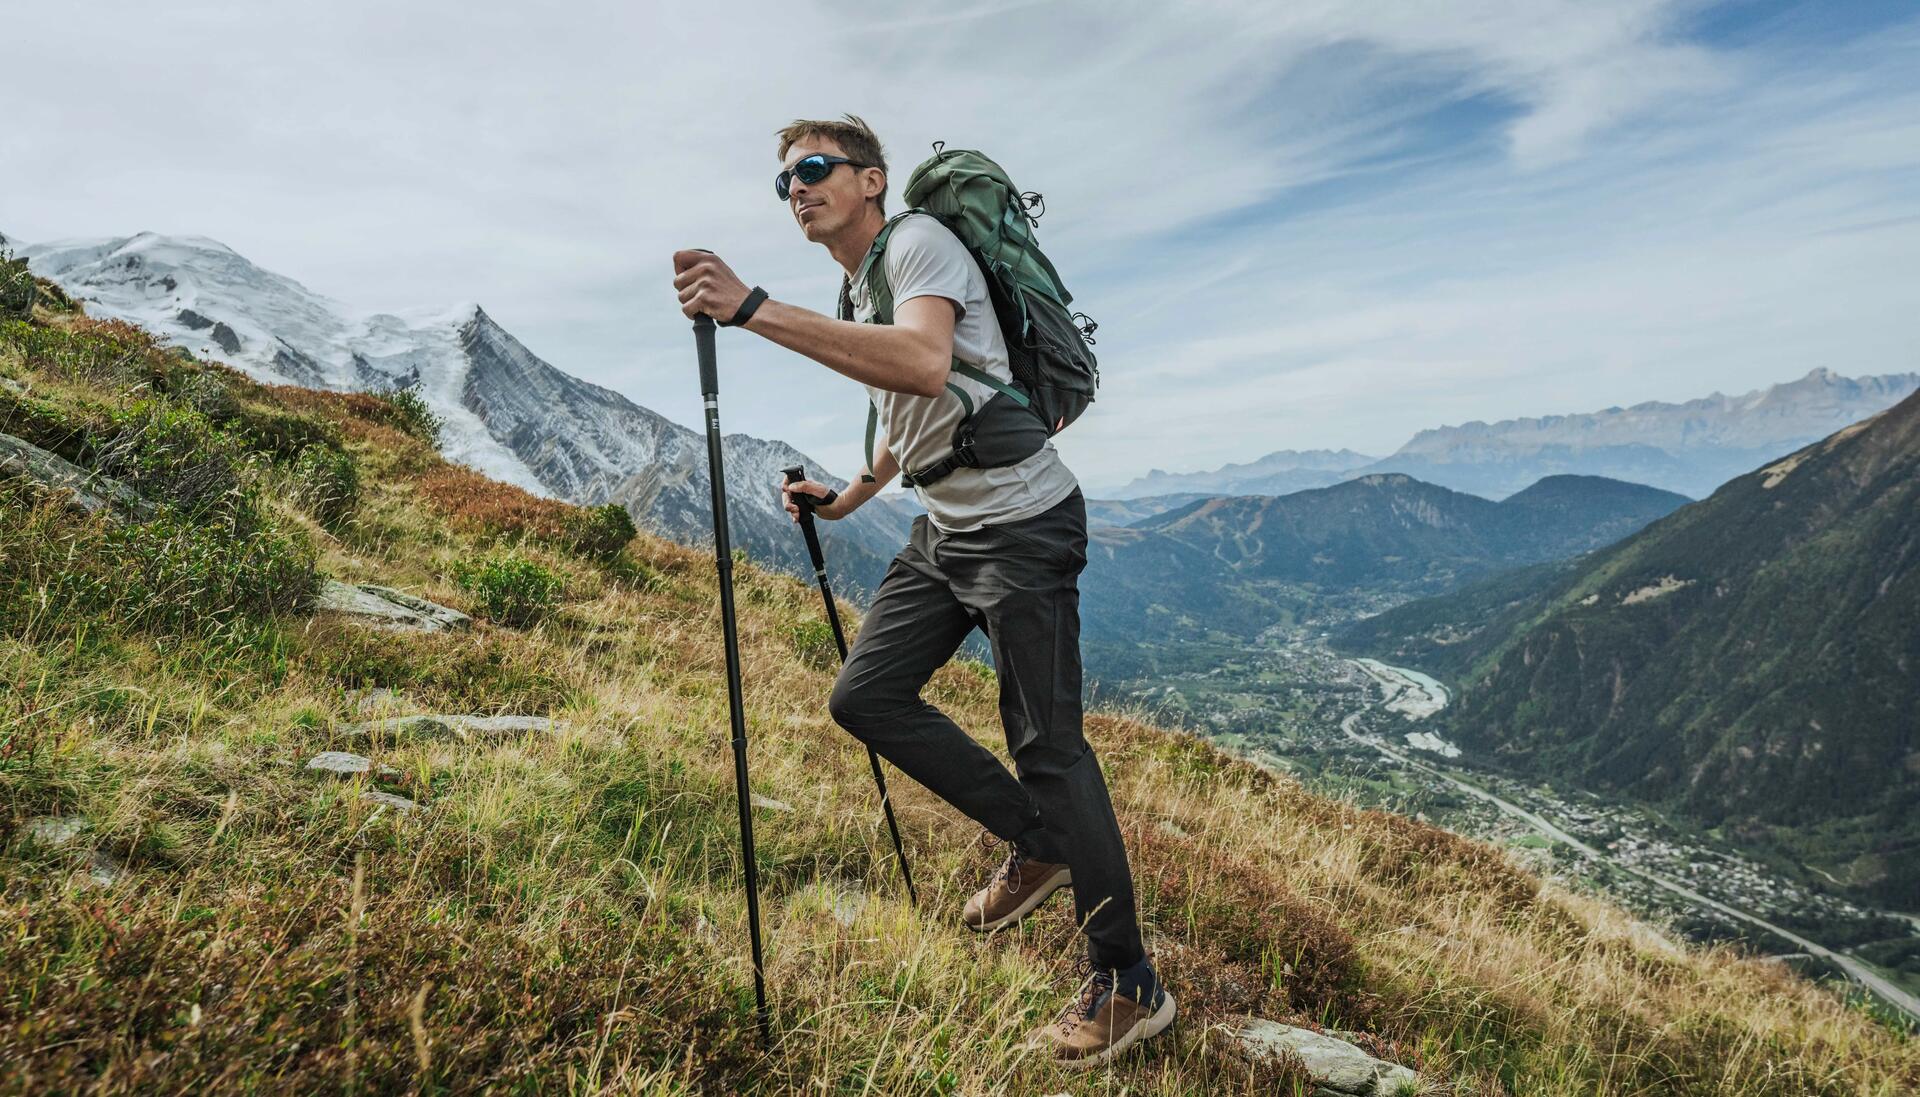 mężczyzna wędrujący po górach z plecakiem turystycznym na plecach trzymając kije trekkingowe w dłoniach